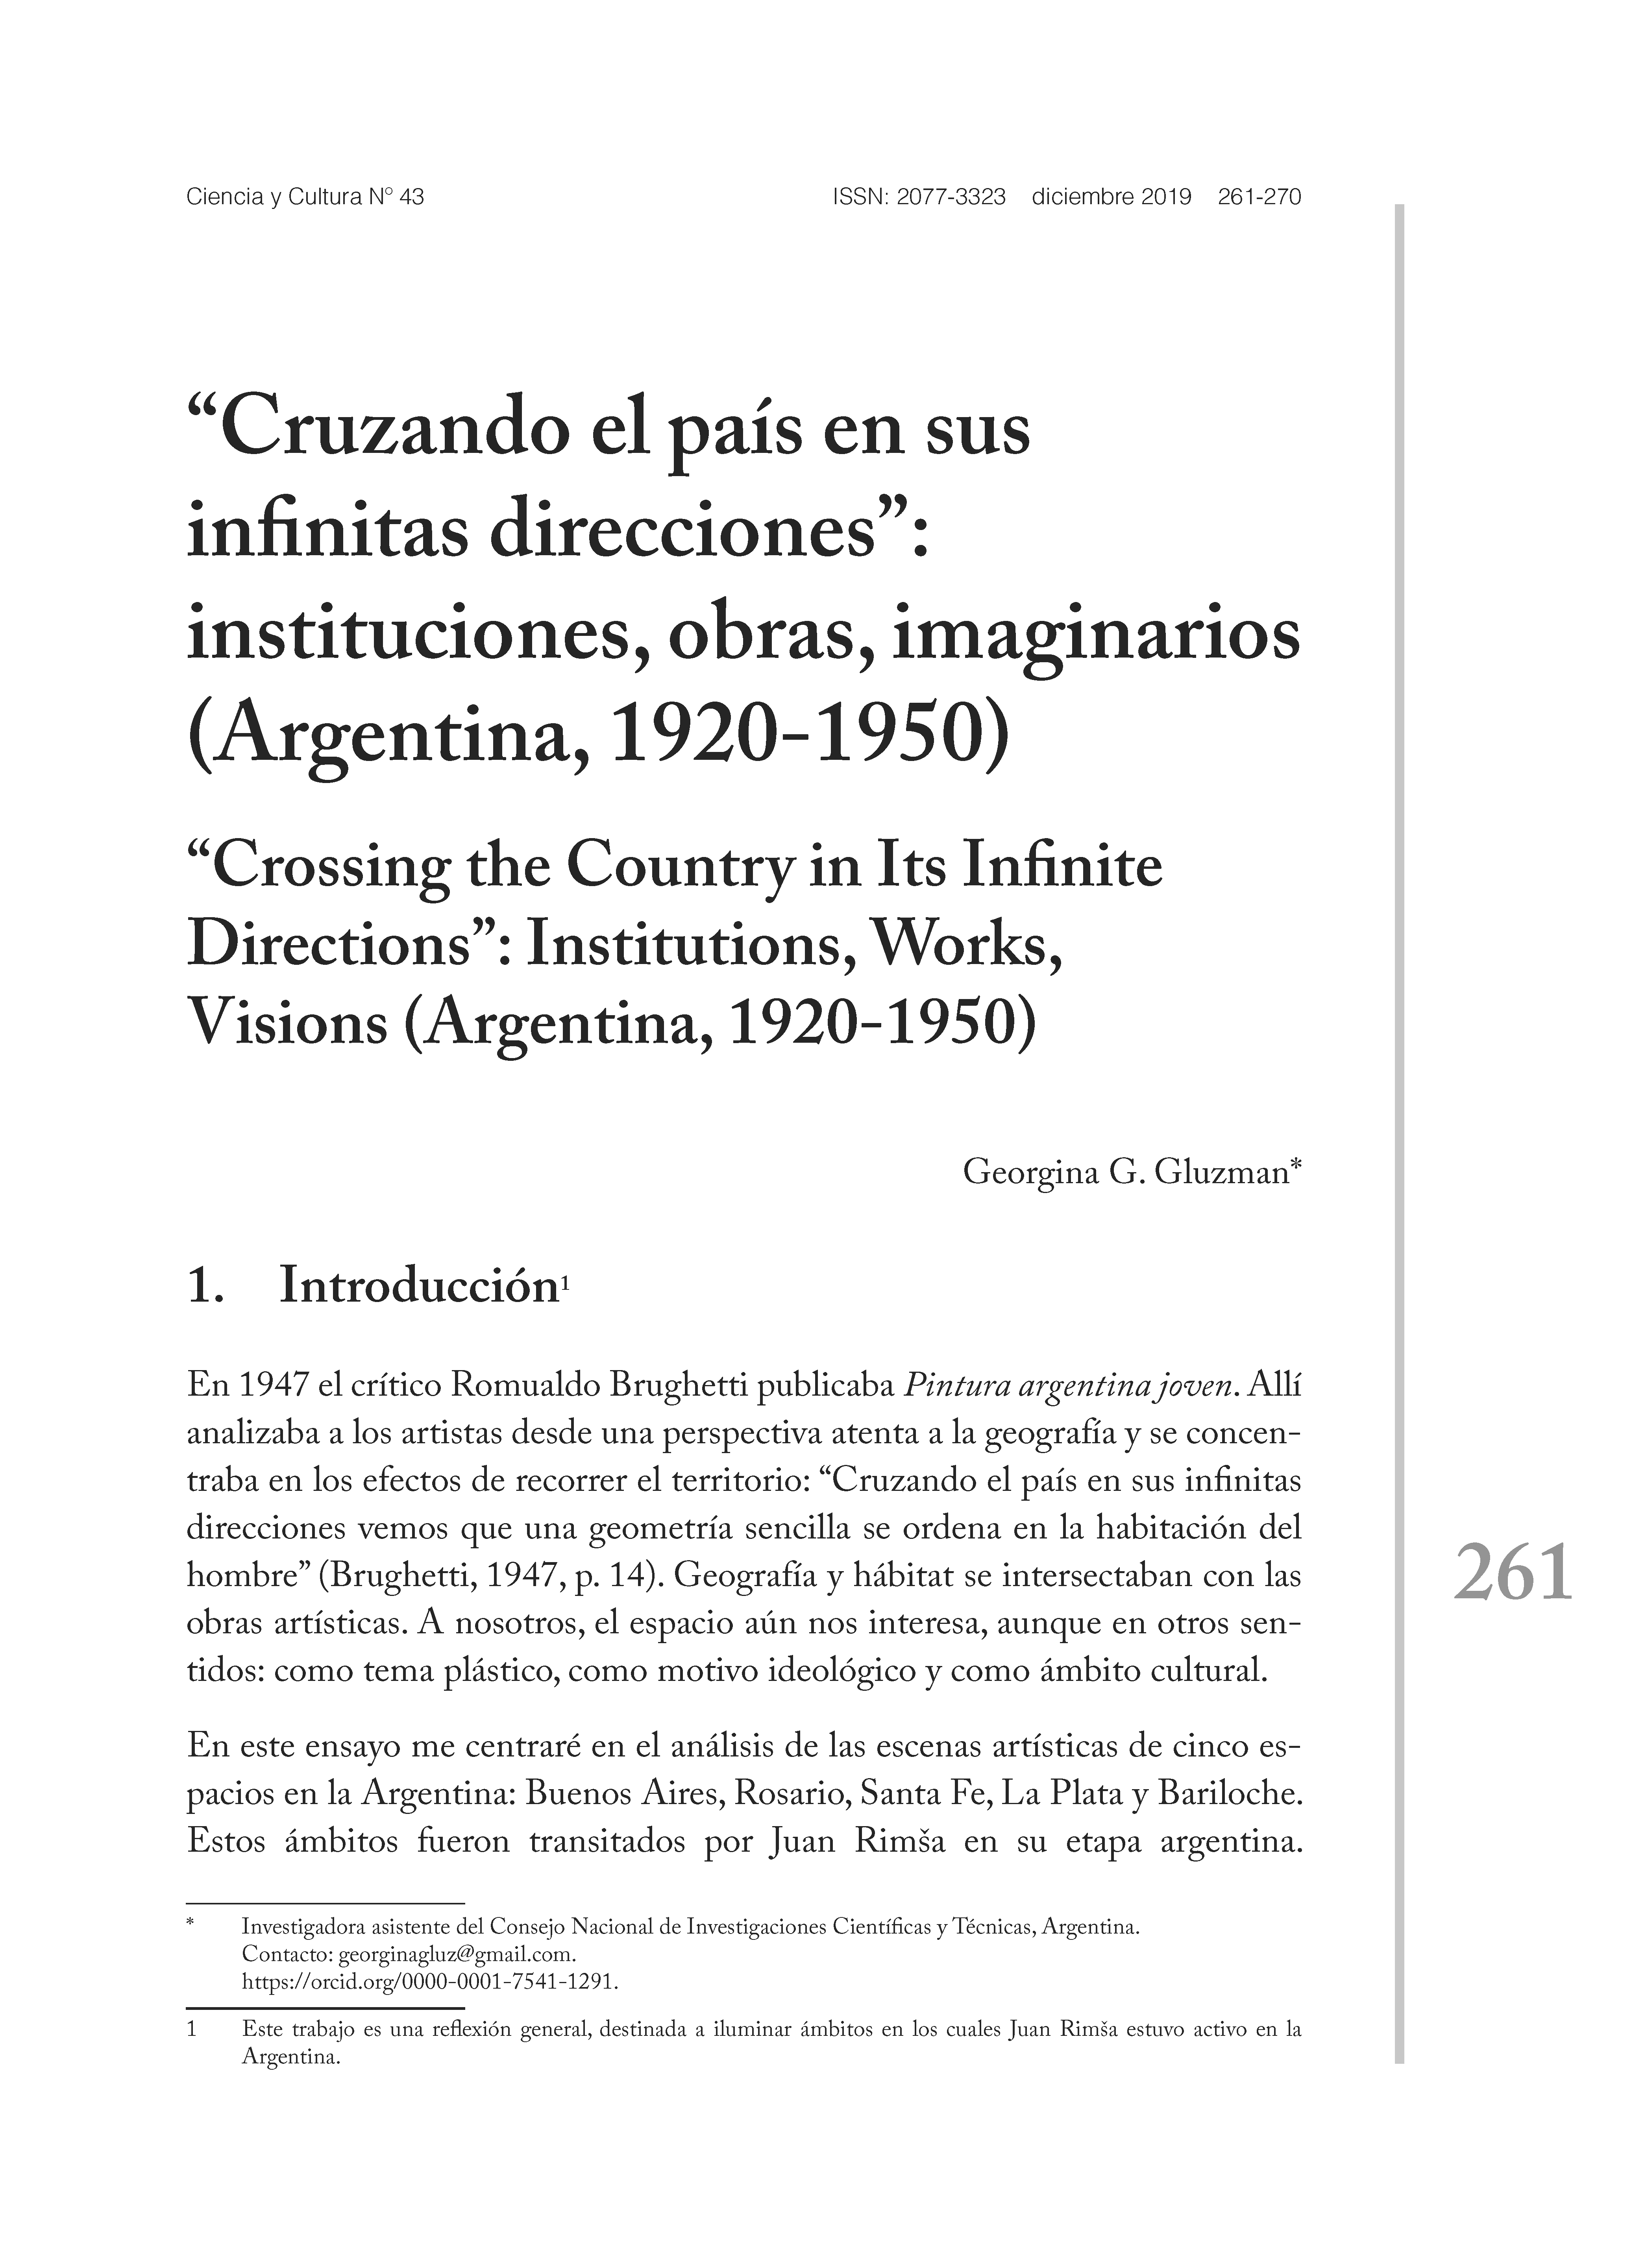 “Cruzando el país en sus infinitas direcciones”: instituciones, obras, imaginarios (Argentina, 1920-1950)